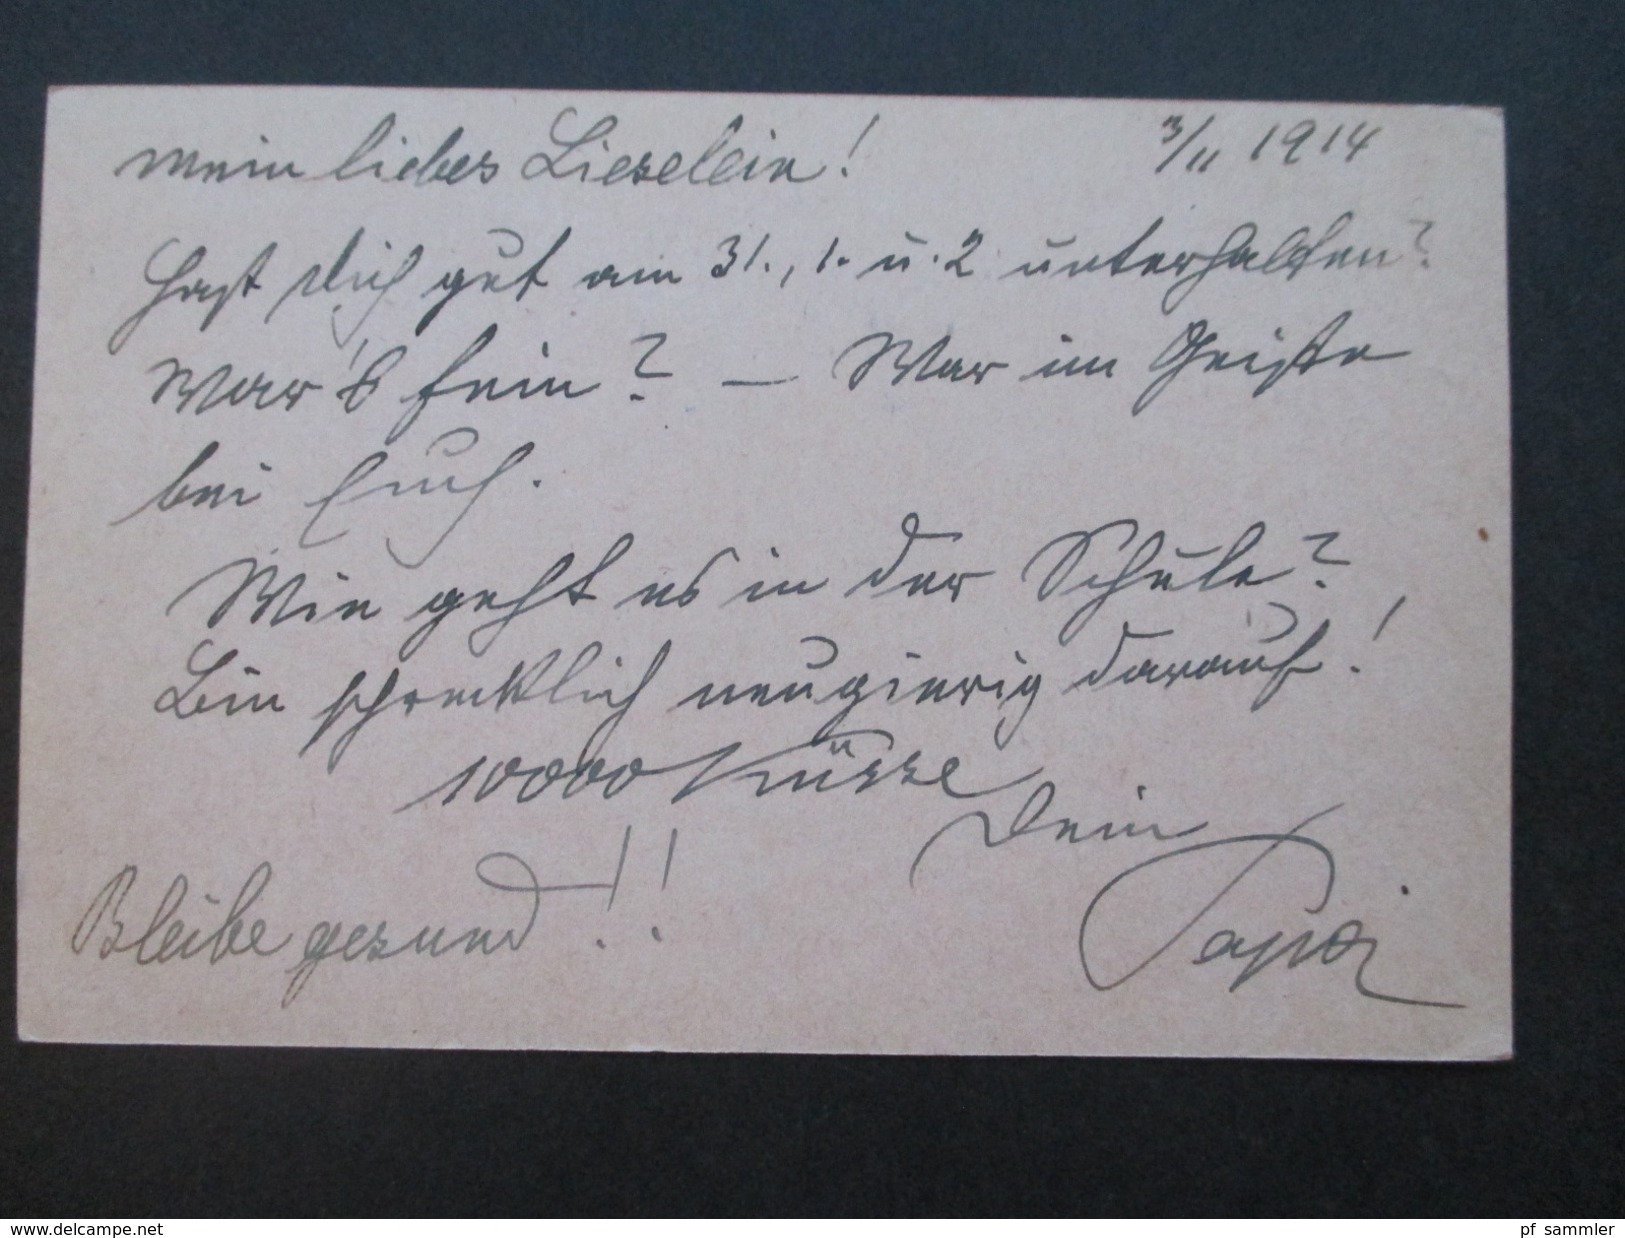 Österreich 1914/15 Felpost Korrespondenz Major Hubel Von Olengo. Mährisch Ostrau / Krakau. Baronesse / K.u.K. Offizier - Briefe U. Dokumente